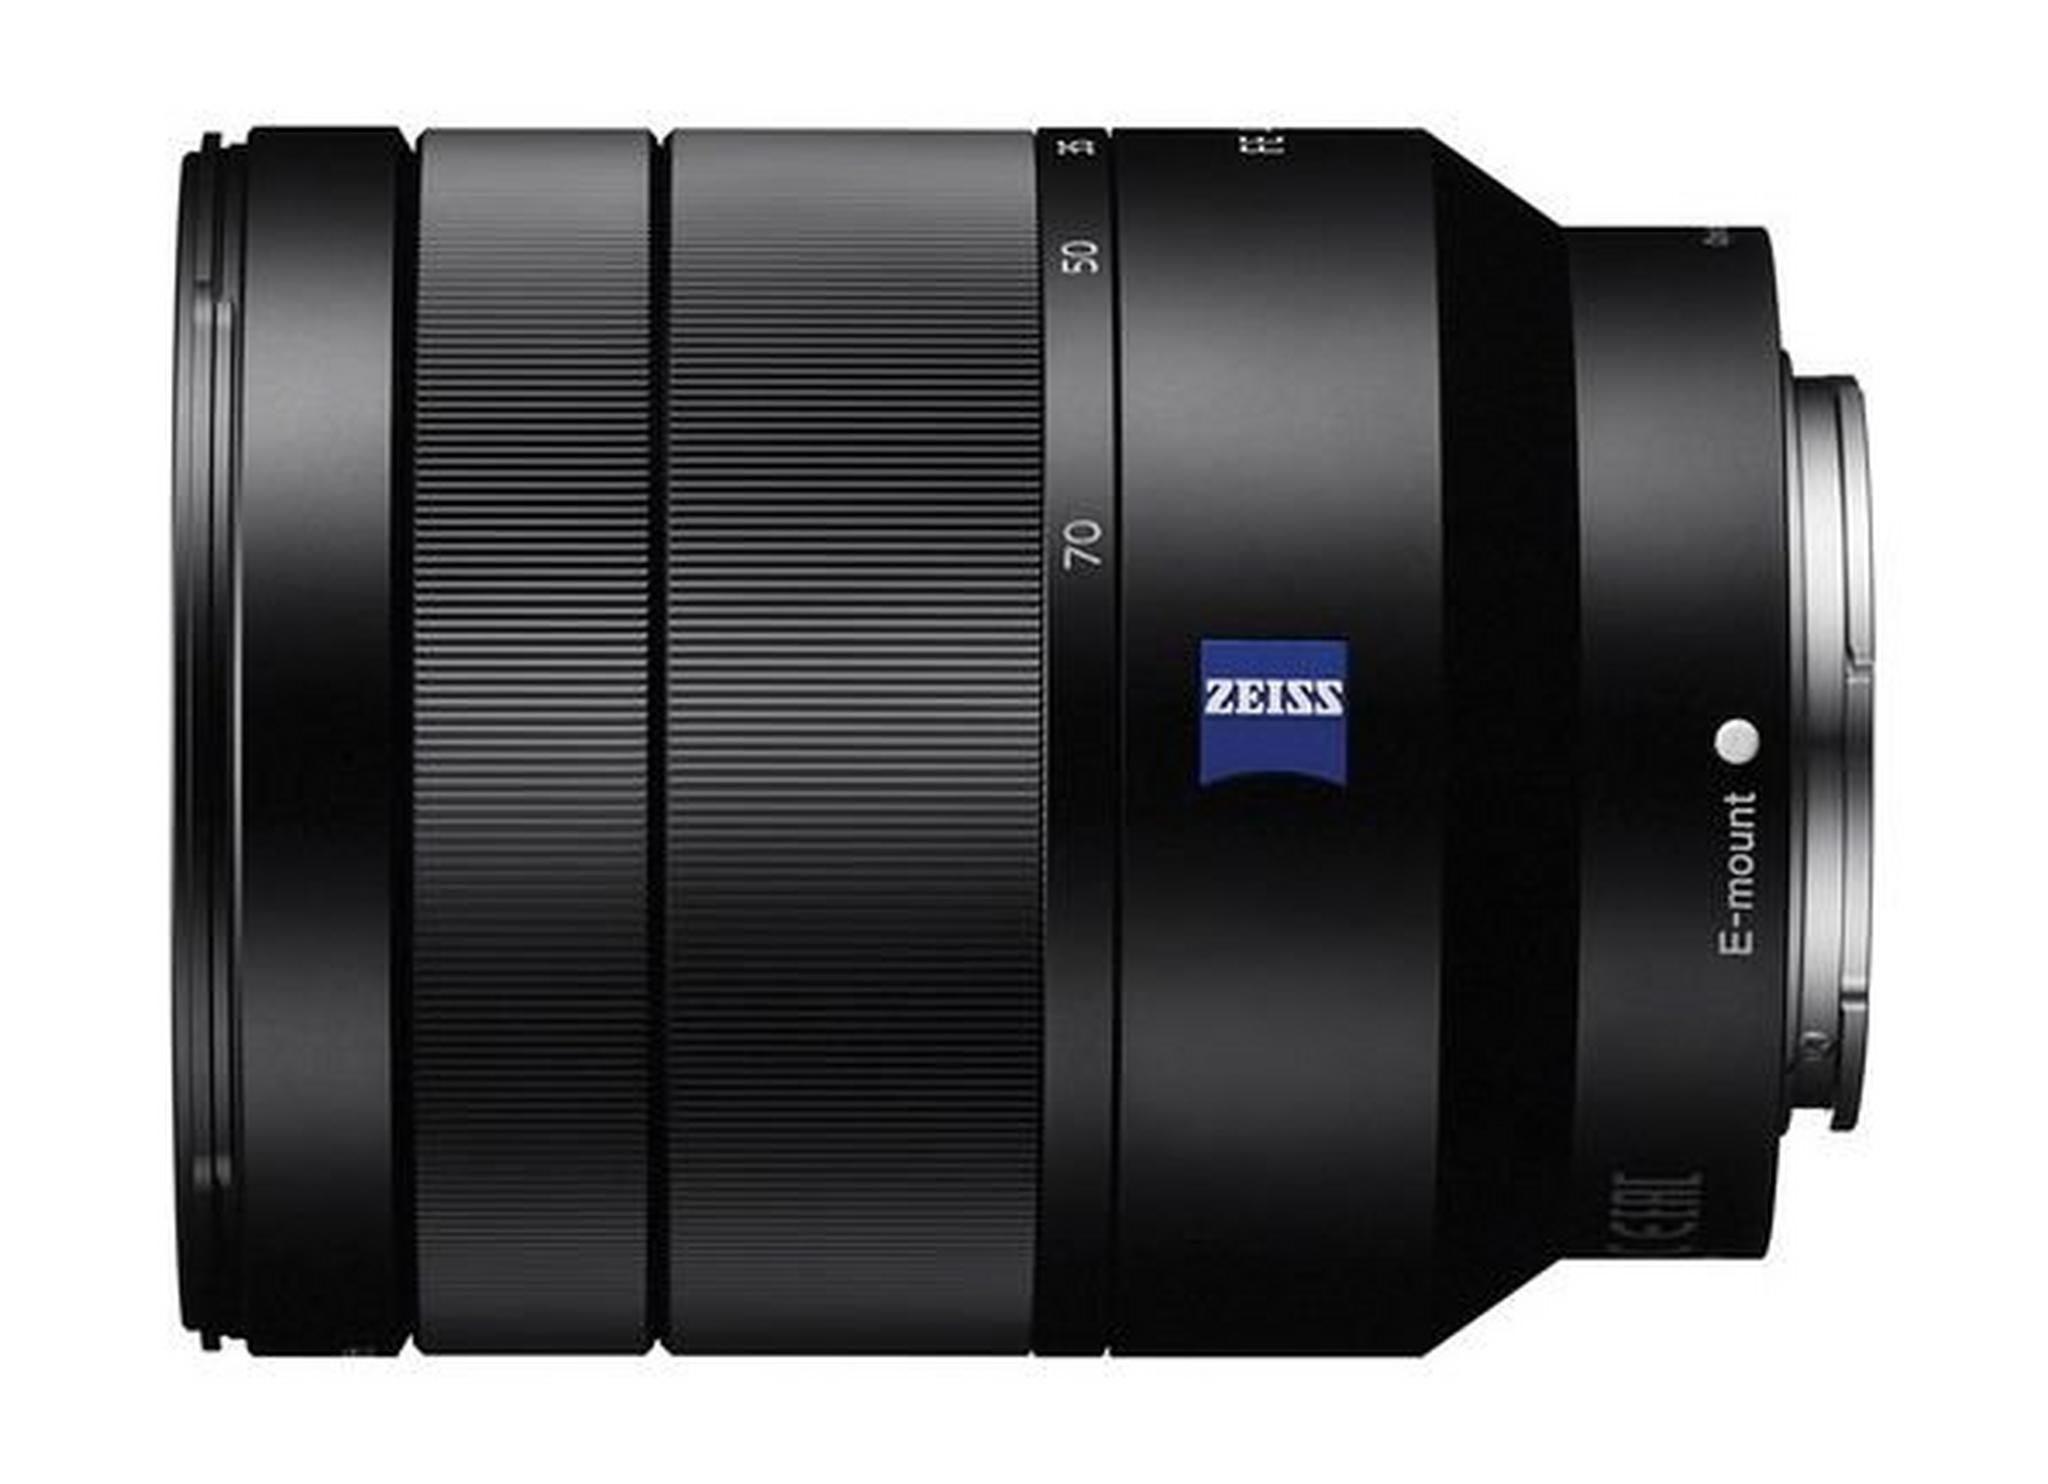 Sony Vario-Tessar T FE 24-70mm f/4 ZA OSS Lens - Black